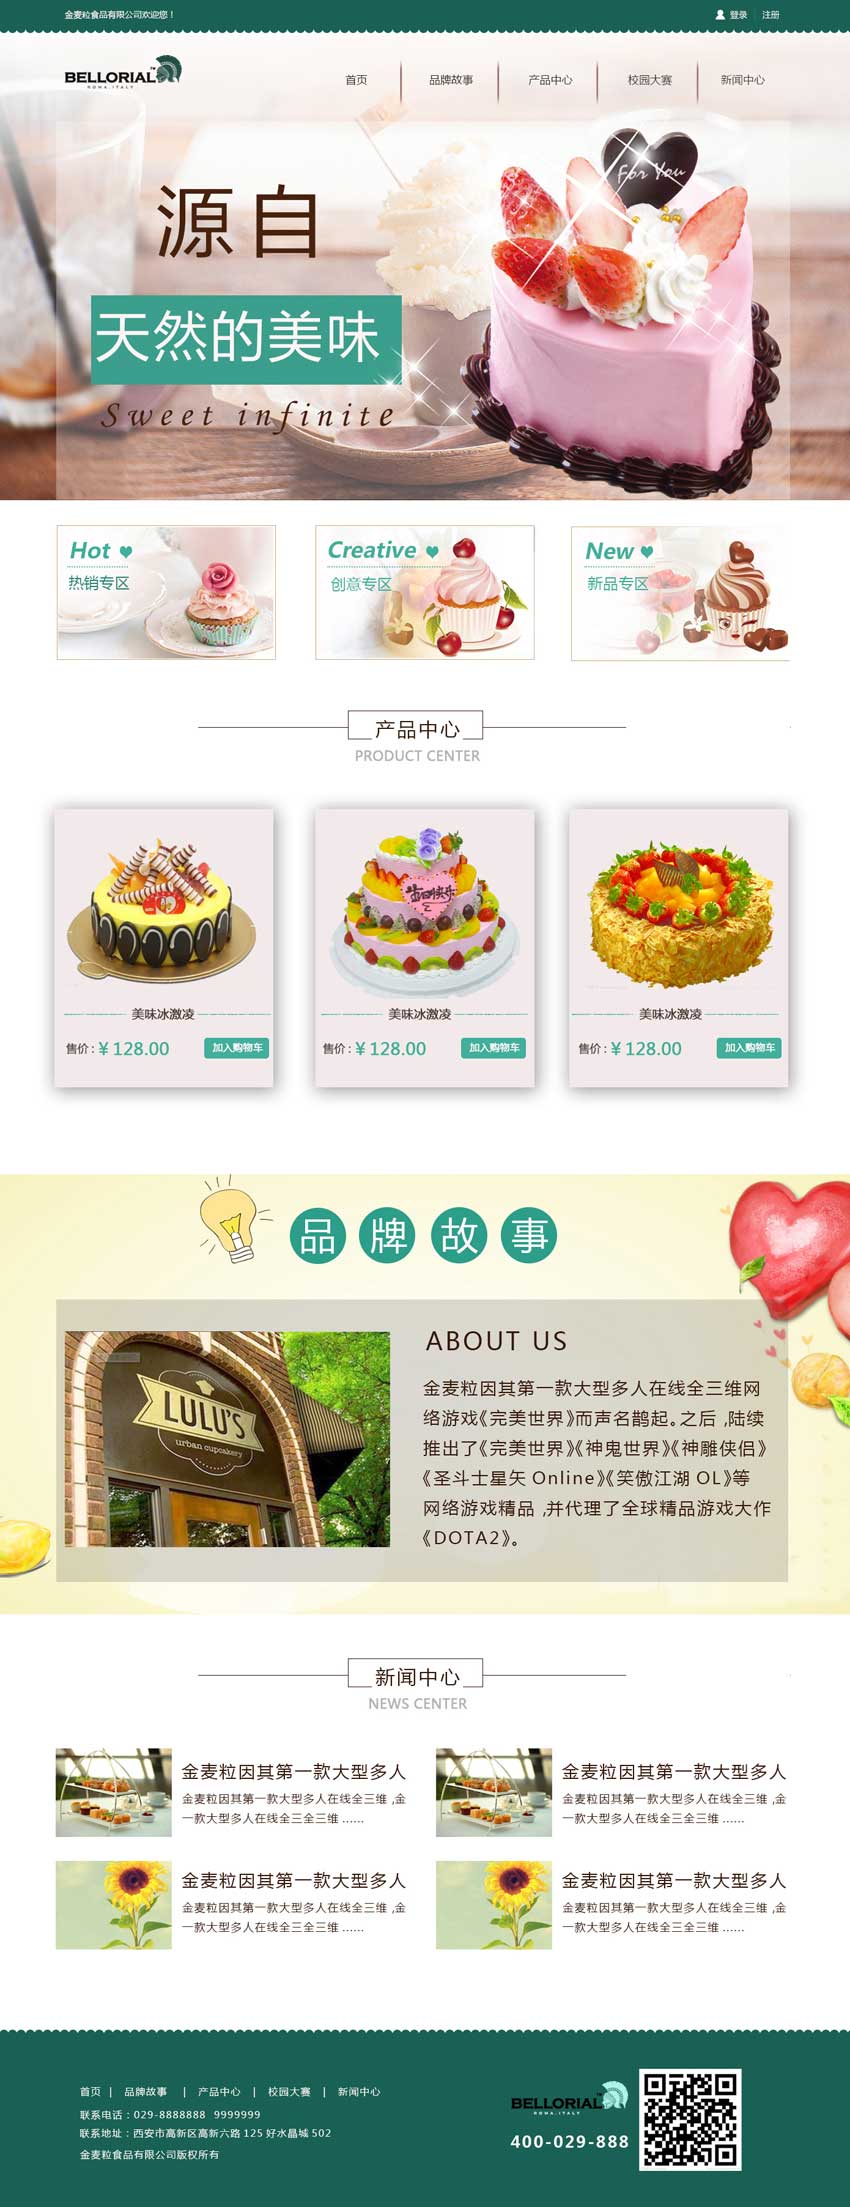 绿色清新蛋糕网站设计模板psd下载_个人网站模板插图